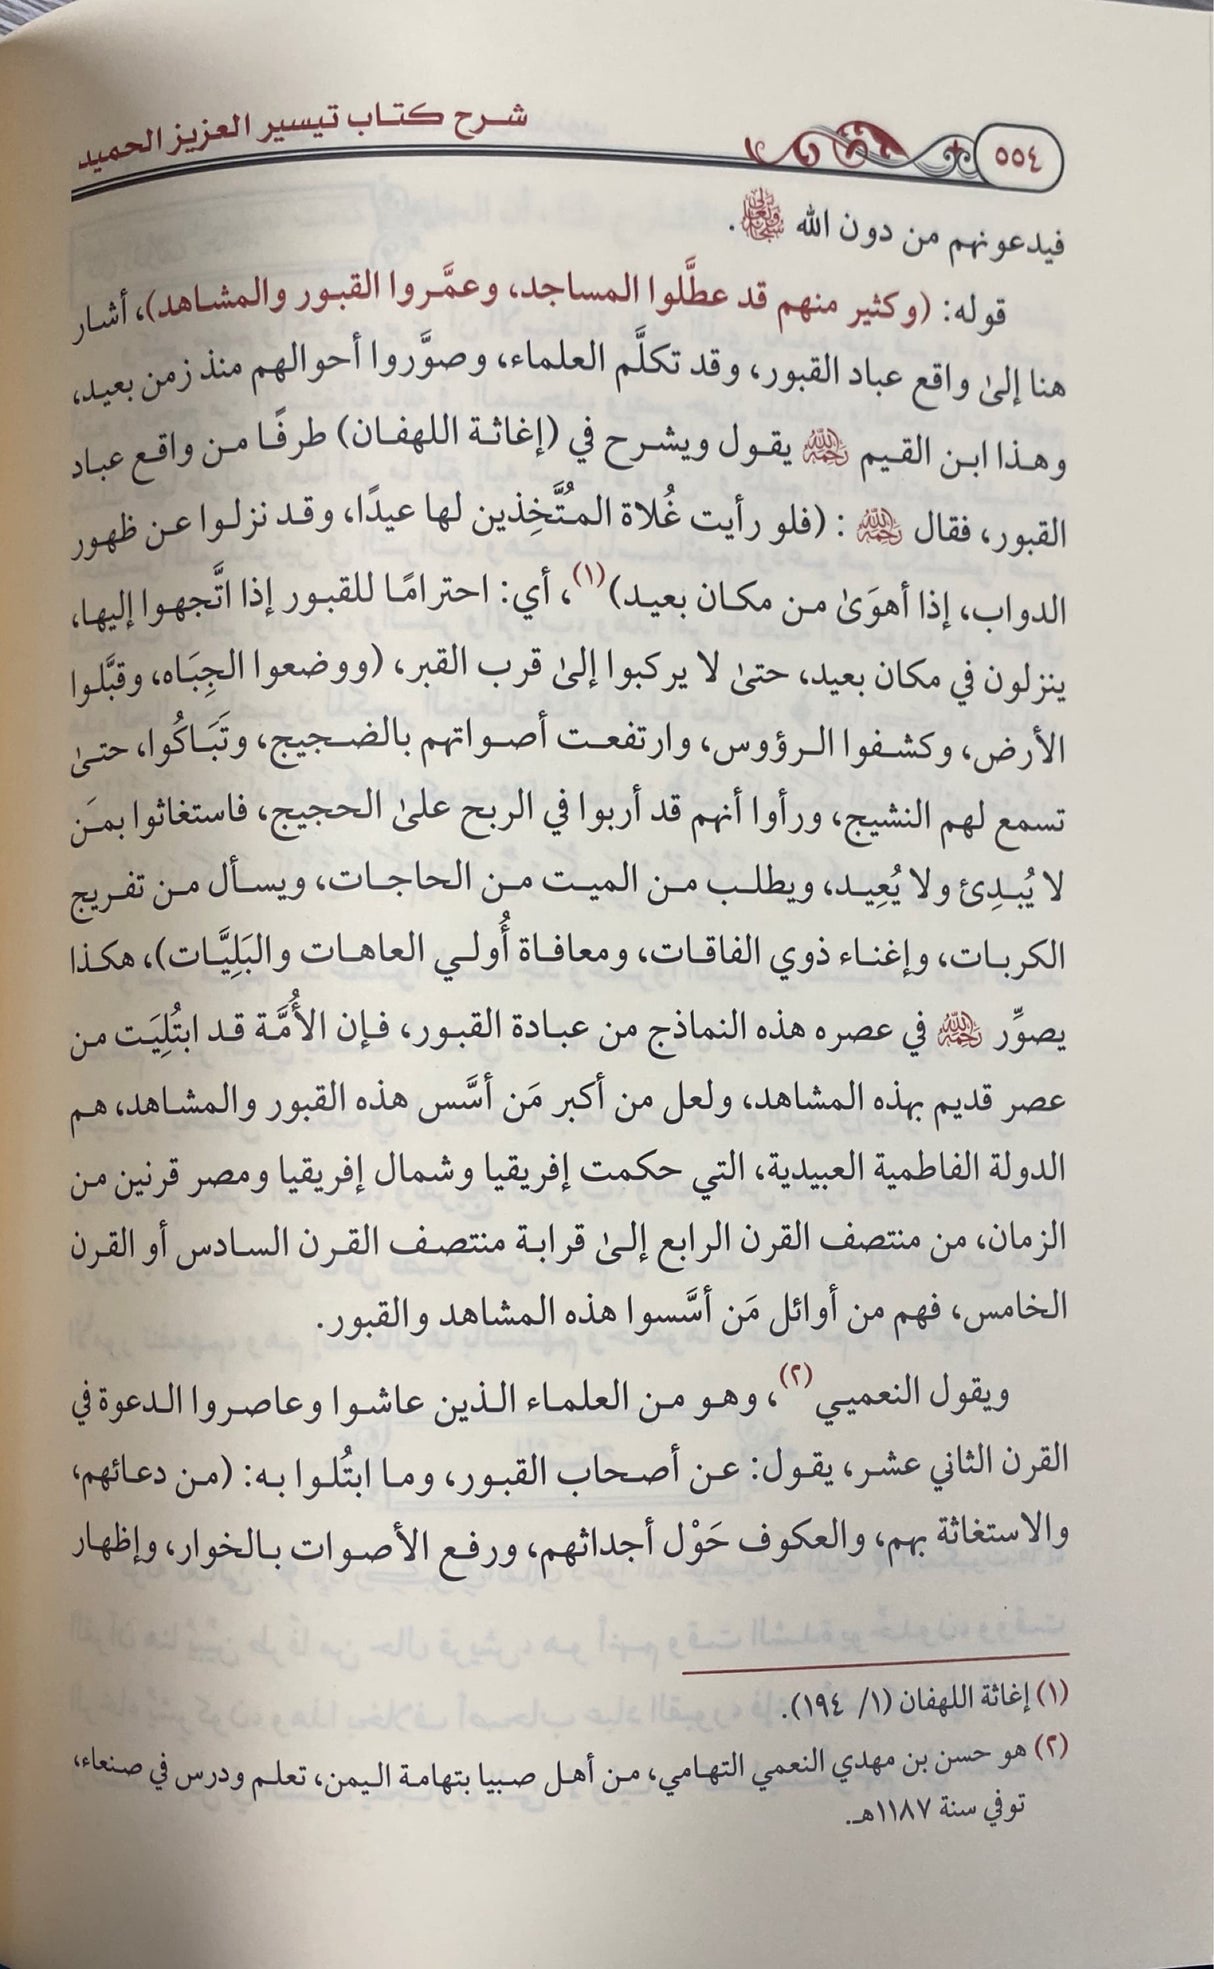 شرح تيسير العزيز الحميد    Sharh Taysir Al Aziz Al Hamid (5 Volume Set)